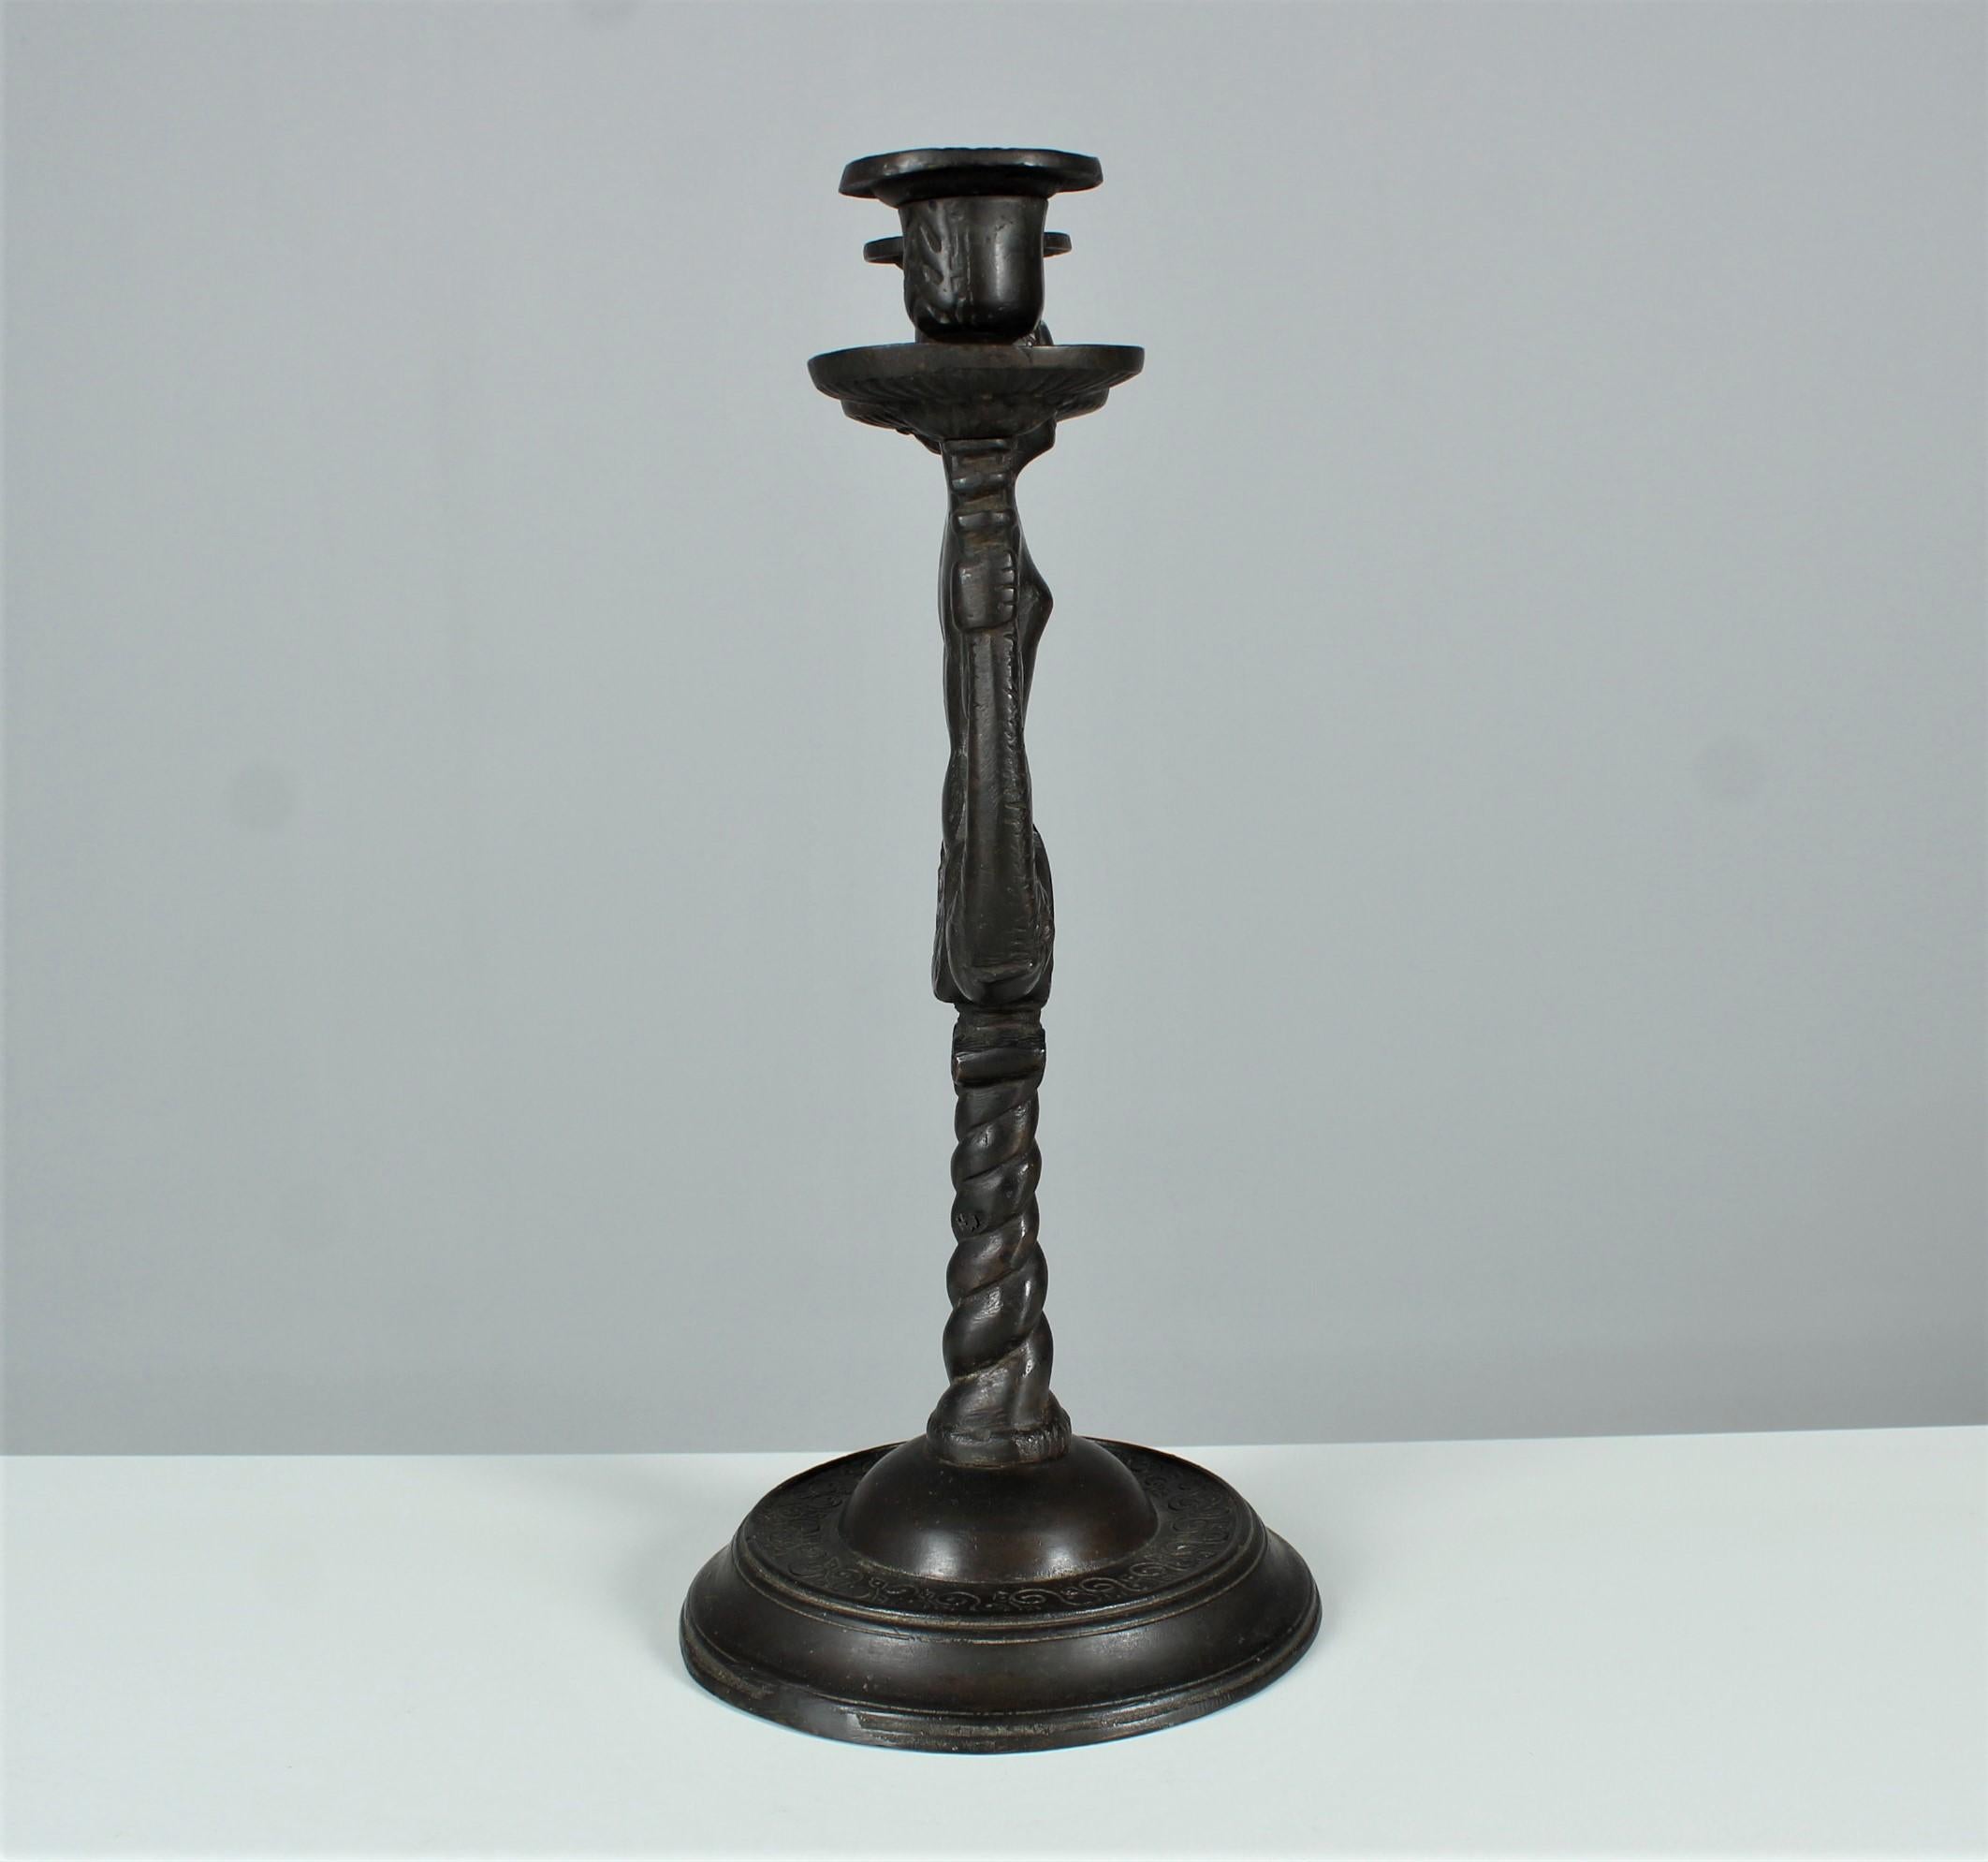 Antique Candlestick, Candle Holder, Bronze Patinated, Art Nouveau, Art Deco For Sale 2